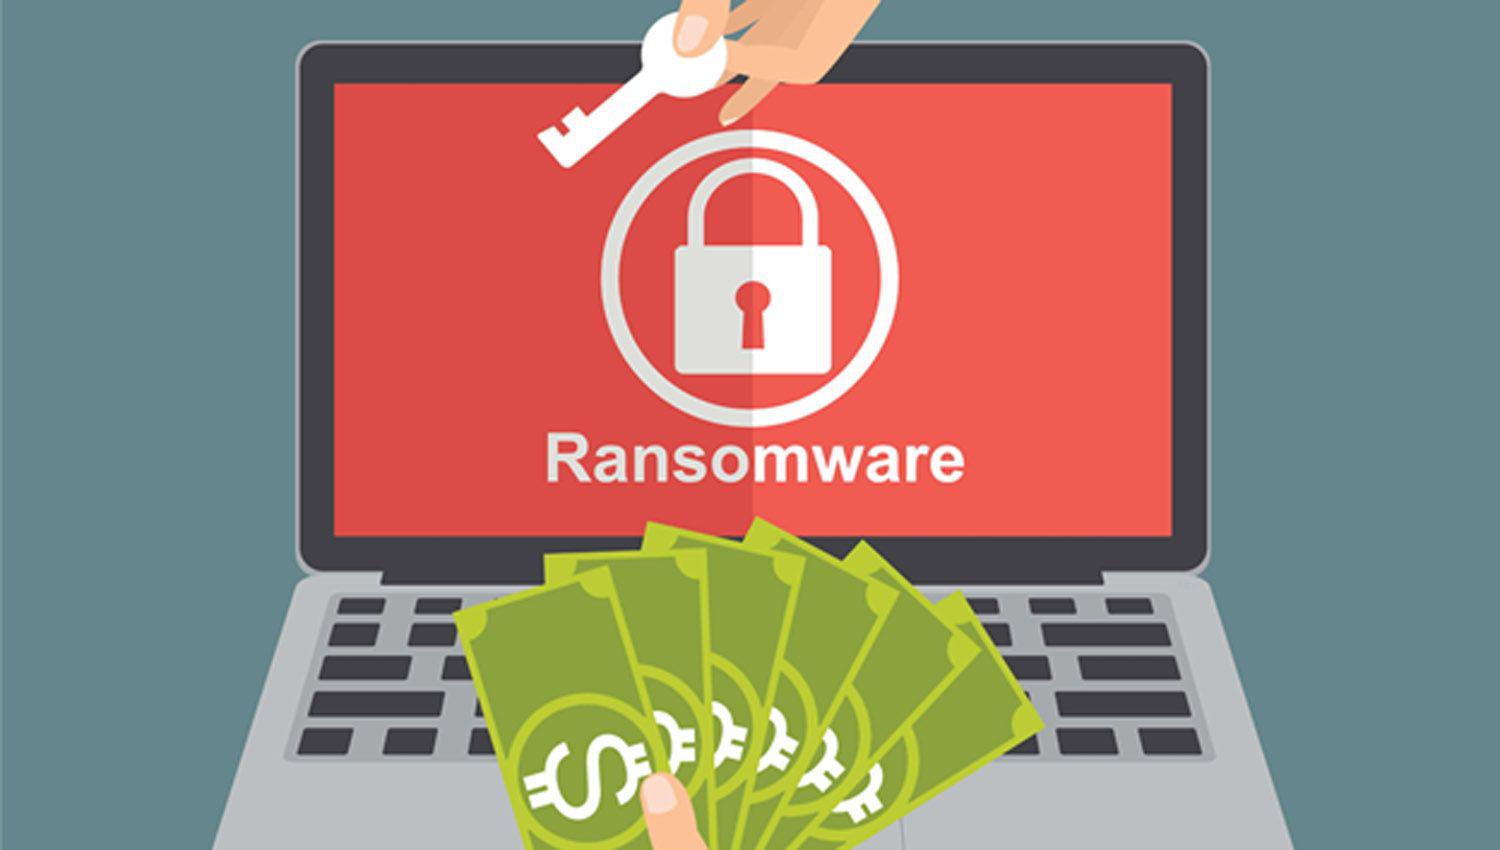 Los ataques de Ransomware y coacutemo prevenirlos